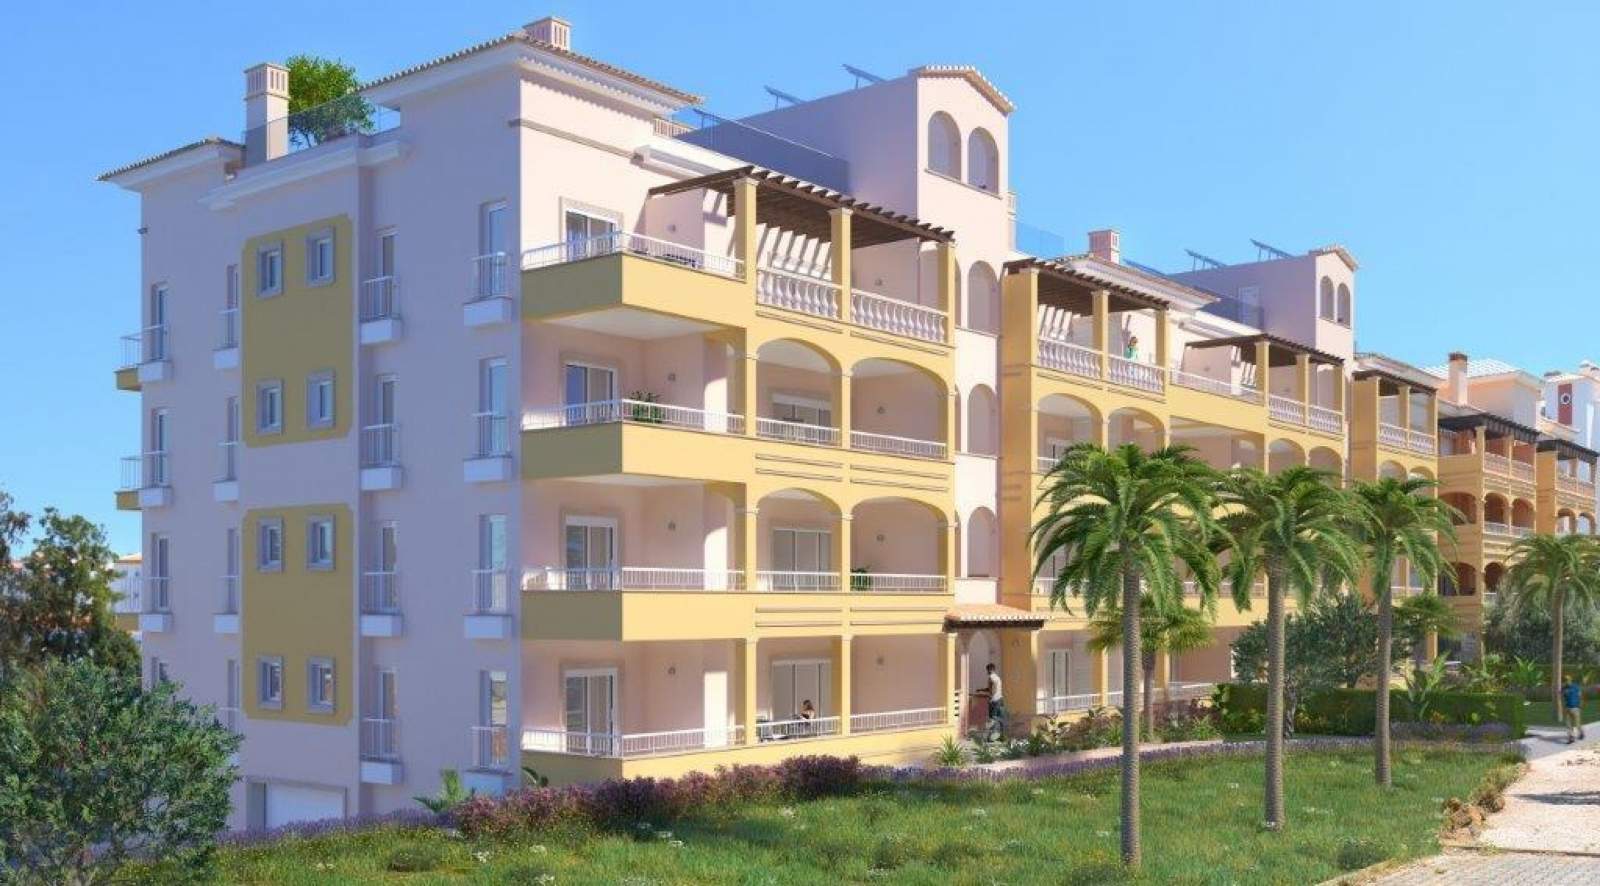 Verkauf einer Wohnung im Bau, mit Terrasse, Lagos, Algarve, Portugal_141600